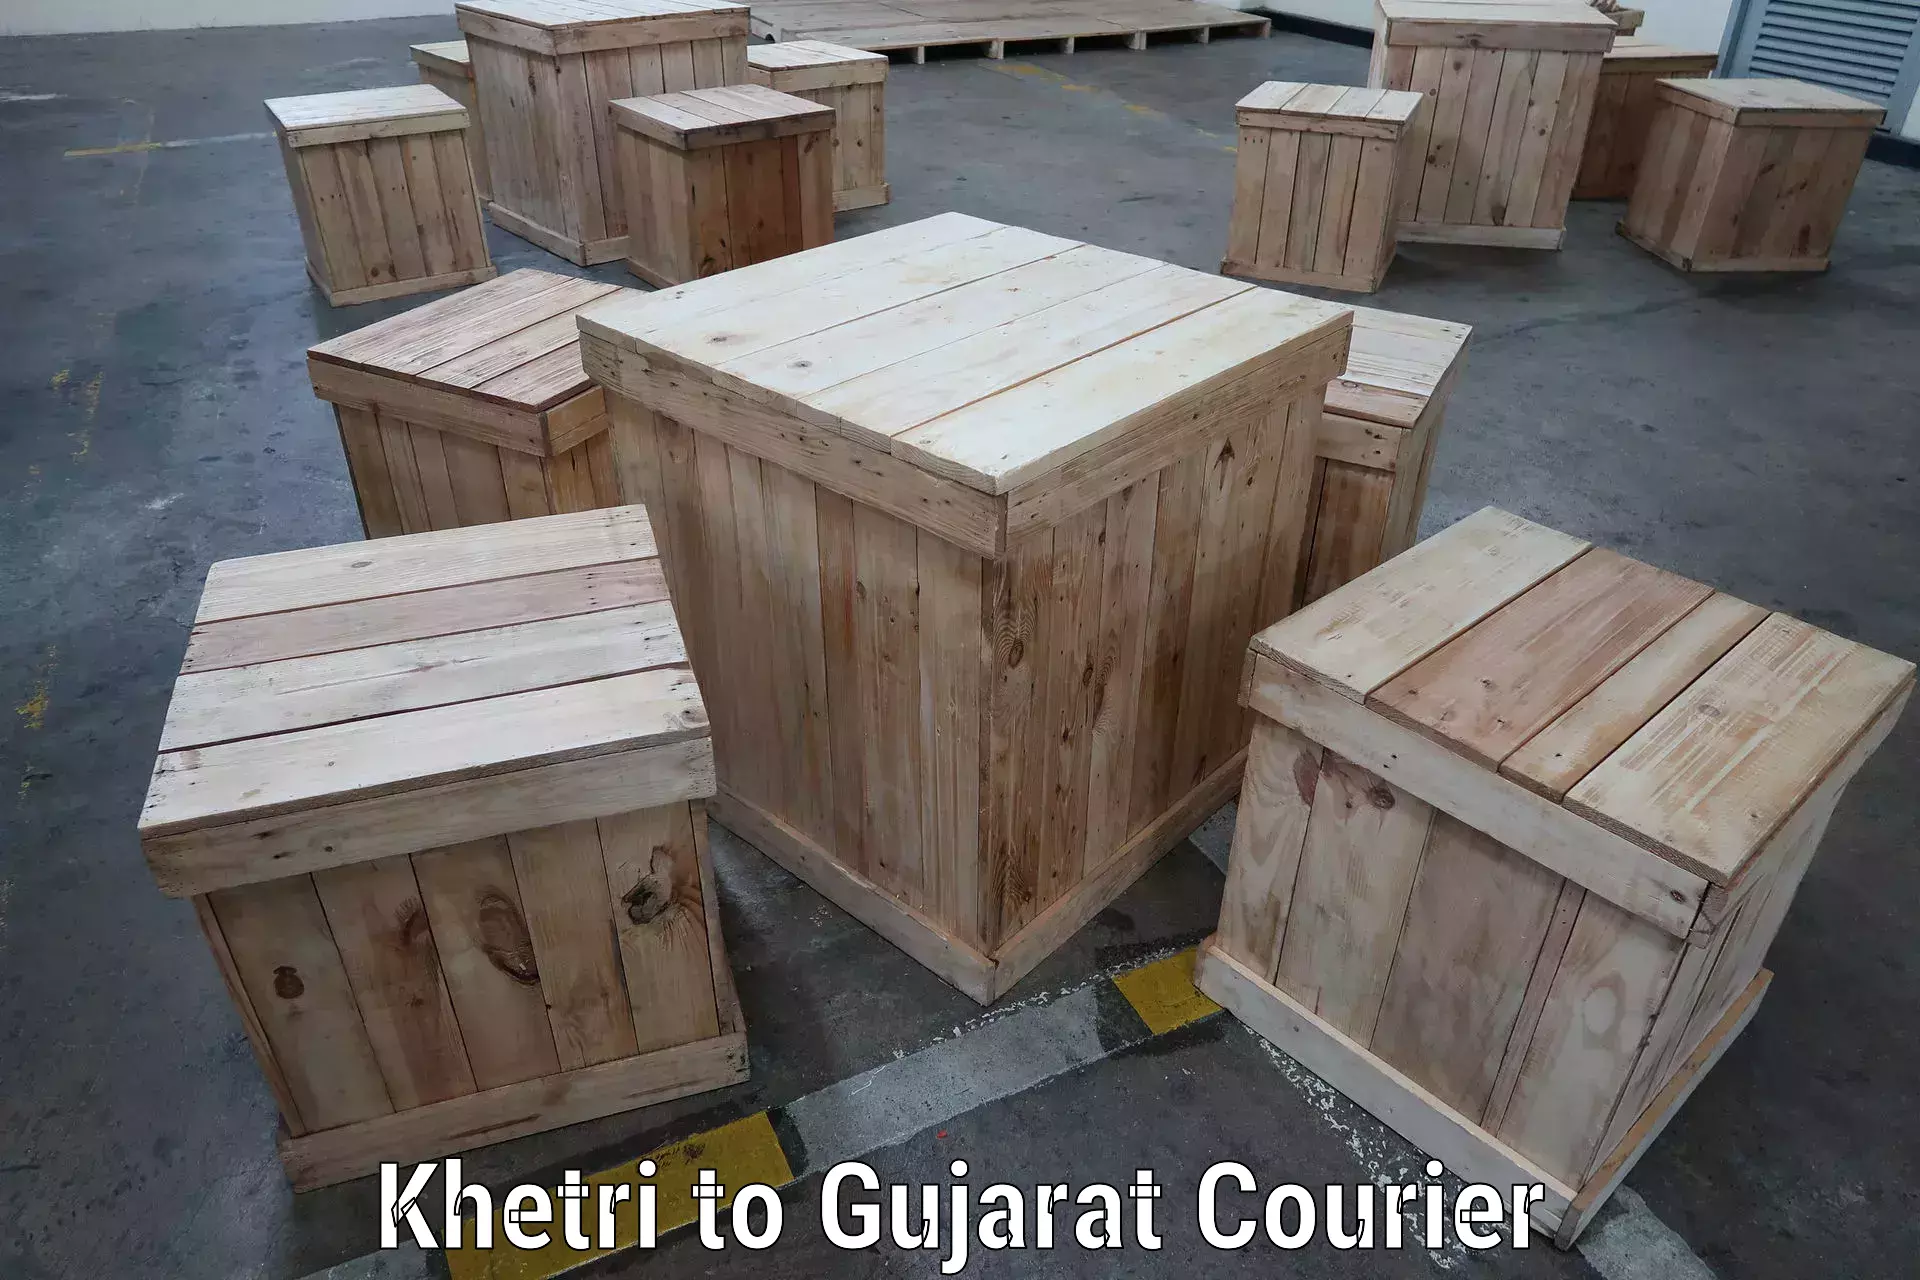 Express logistics in Khetri to Gujarat